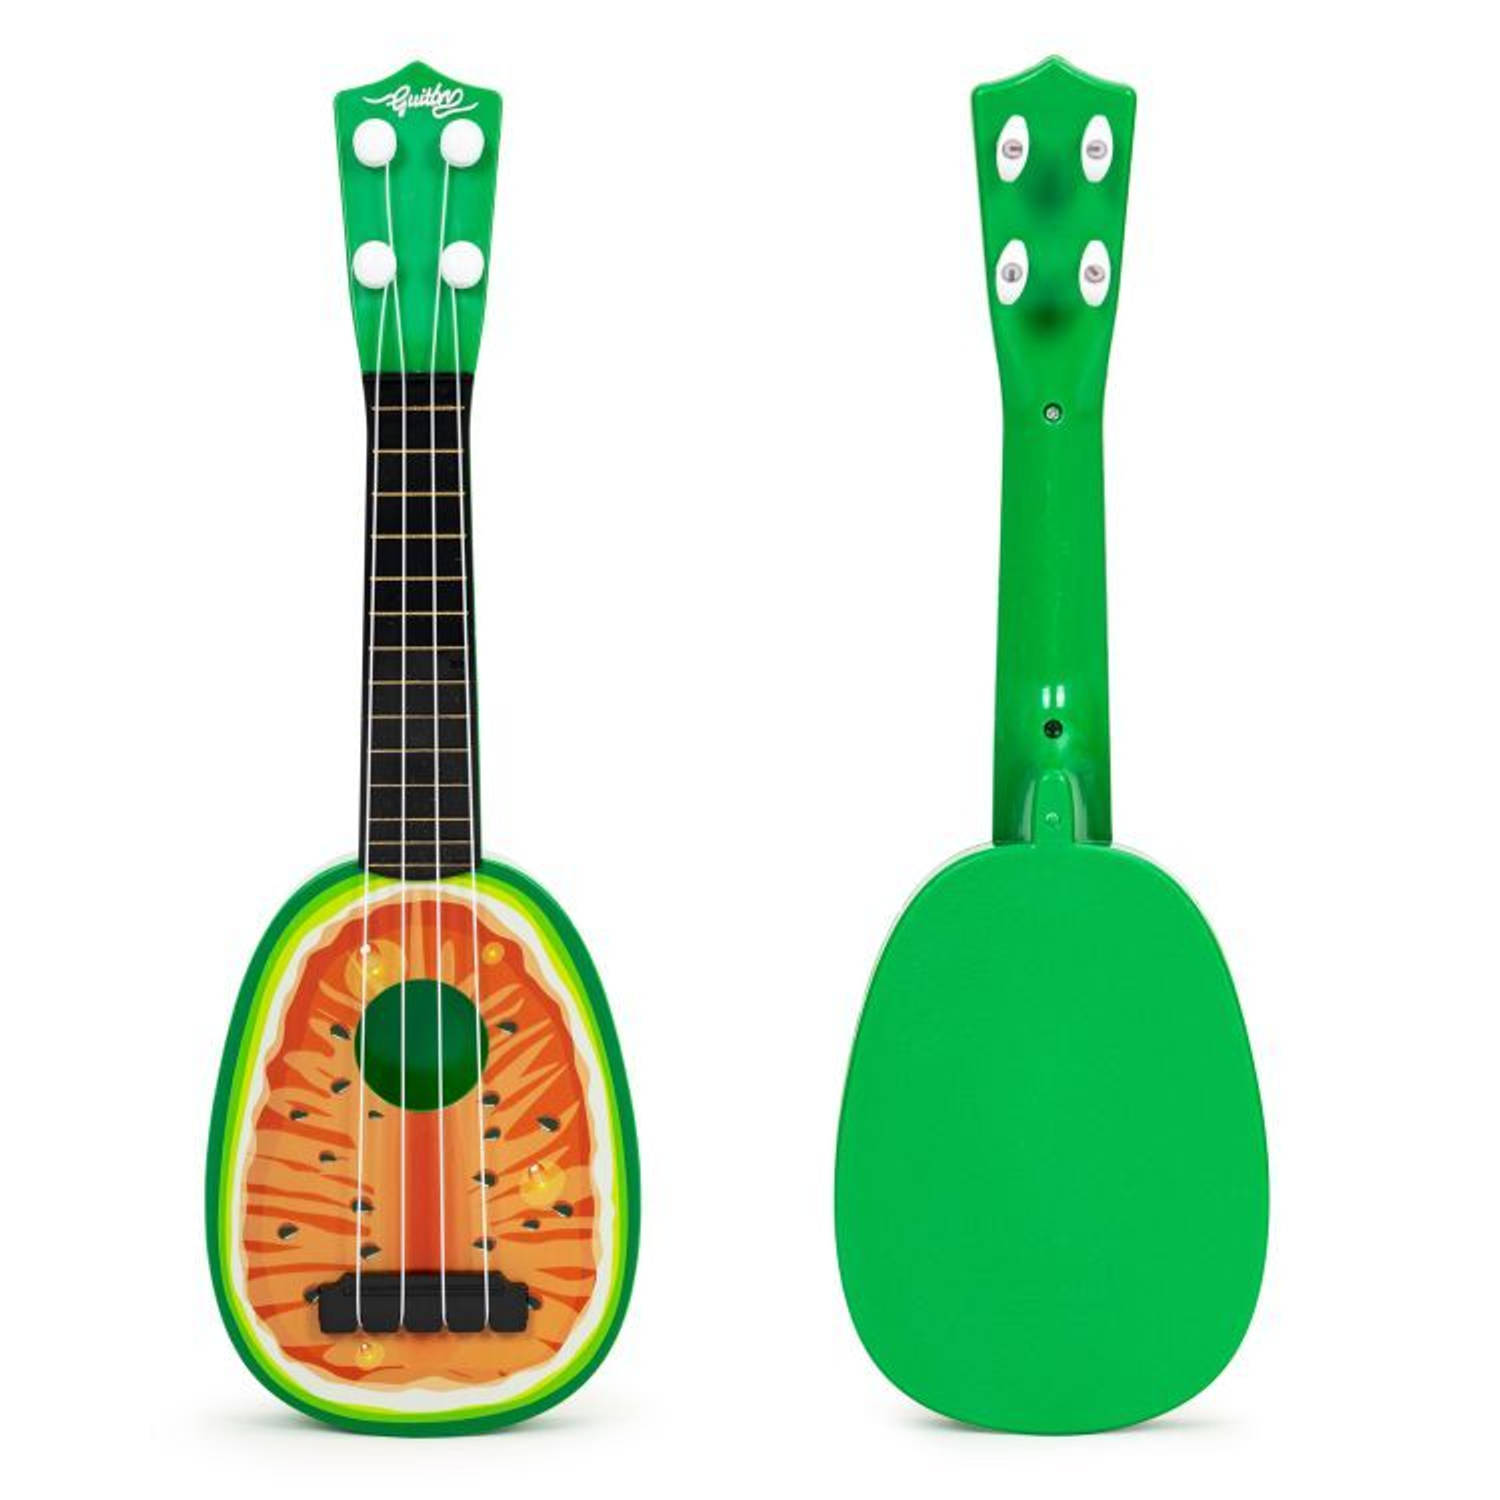 Ecotoys mini kunststof kinder ukelele-gitaar watermeloen met 4 snaren 36 x 11.5 x 3.5 cm groen